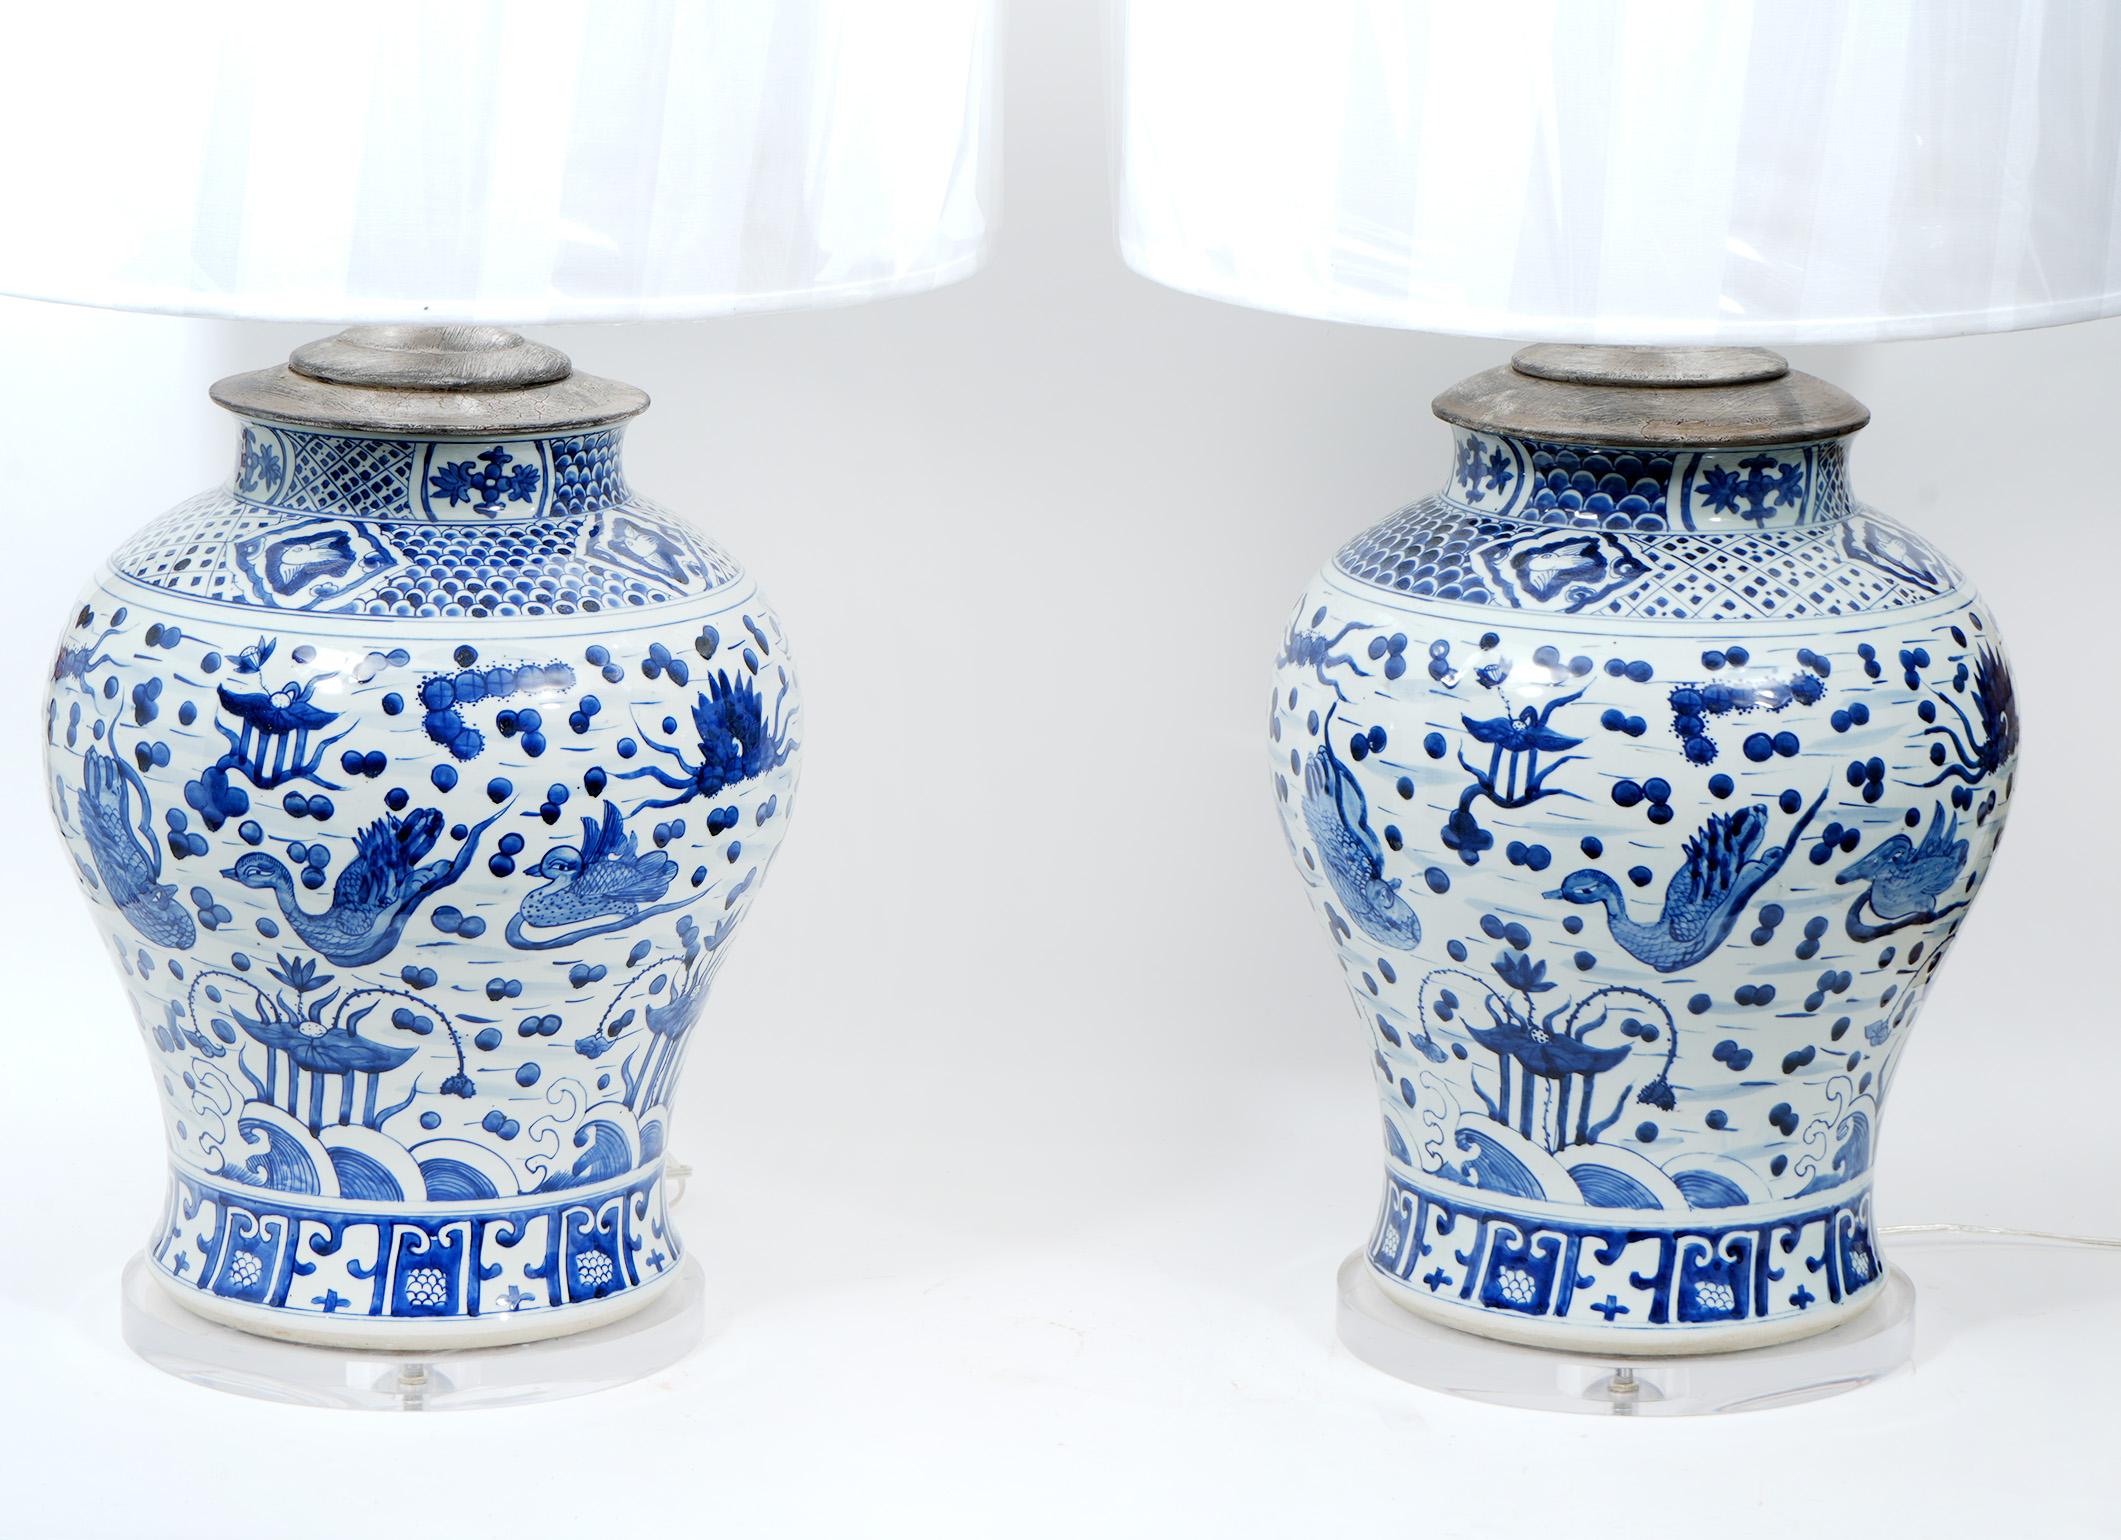 Großes Paar großer chinesischer Lampen aus blauem und weißem Porzellan. Große antike Vasen, die zu Lampen verarbeitet wurden.  Die Lampen sind neu verkabelt. Lucite ist neu. Die Lampenschirme sind im Lieferumfang enthalten. Insgesamt 38